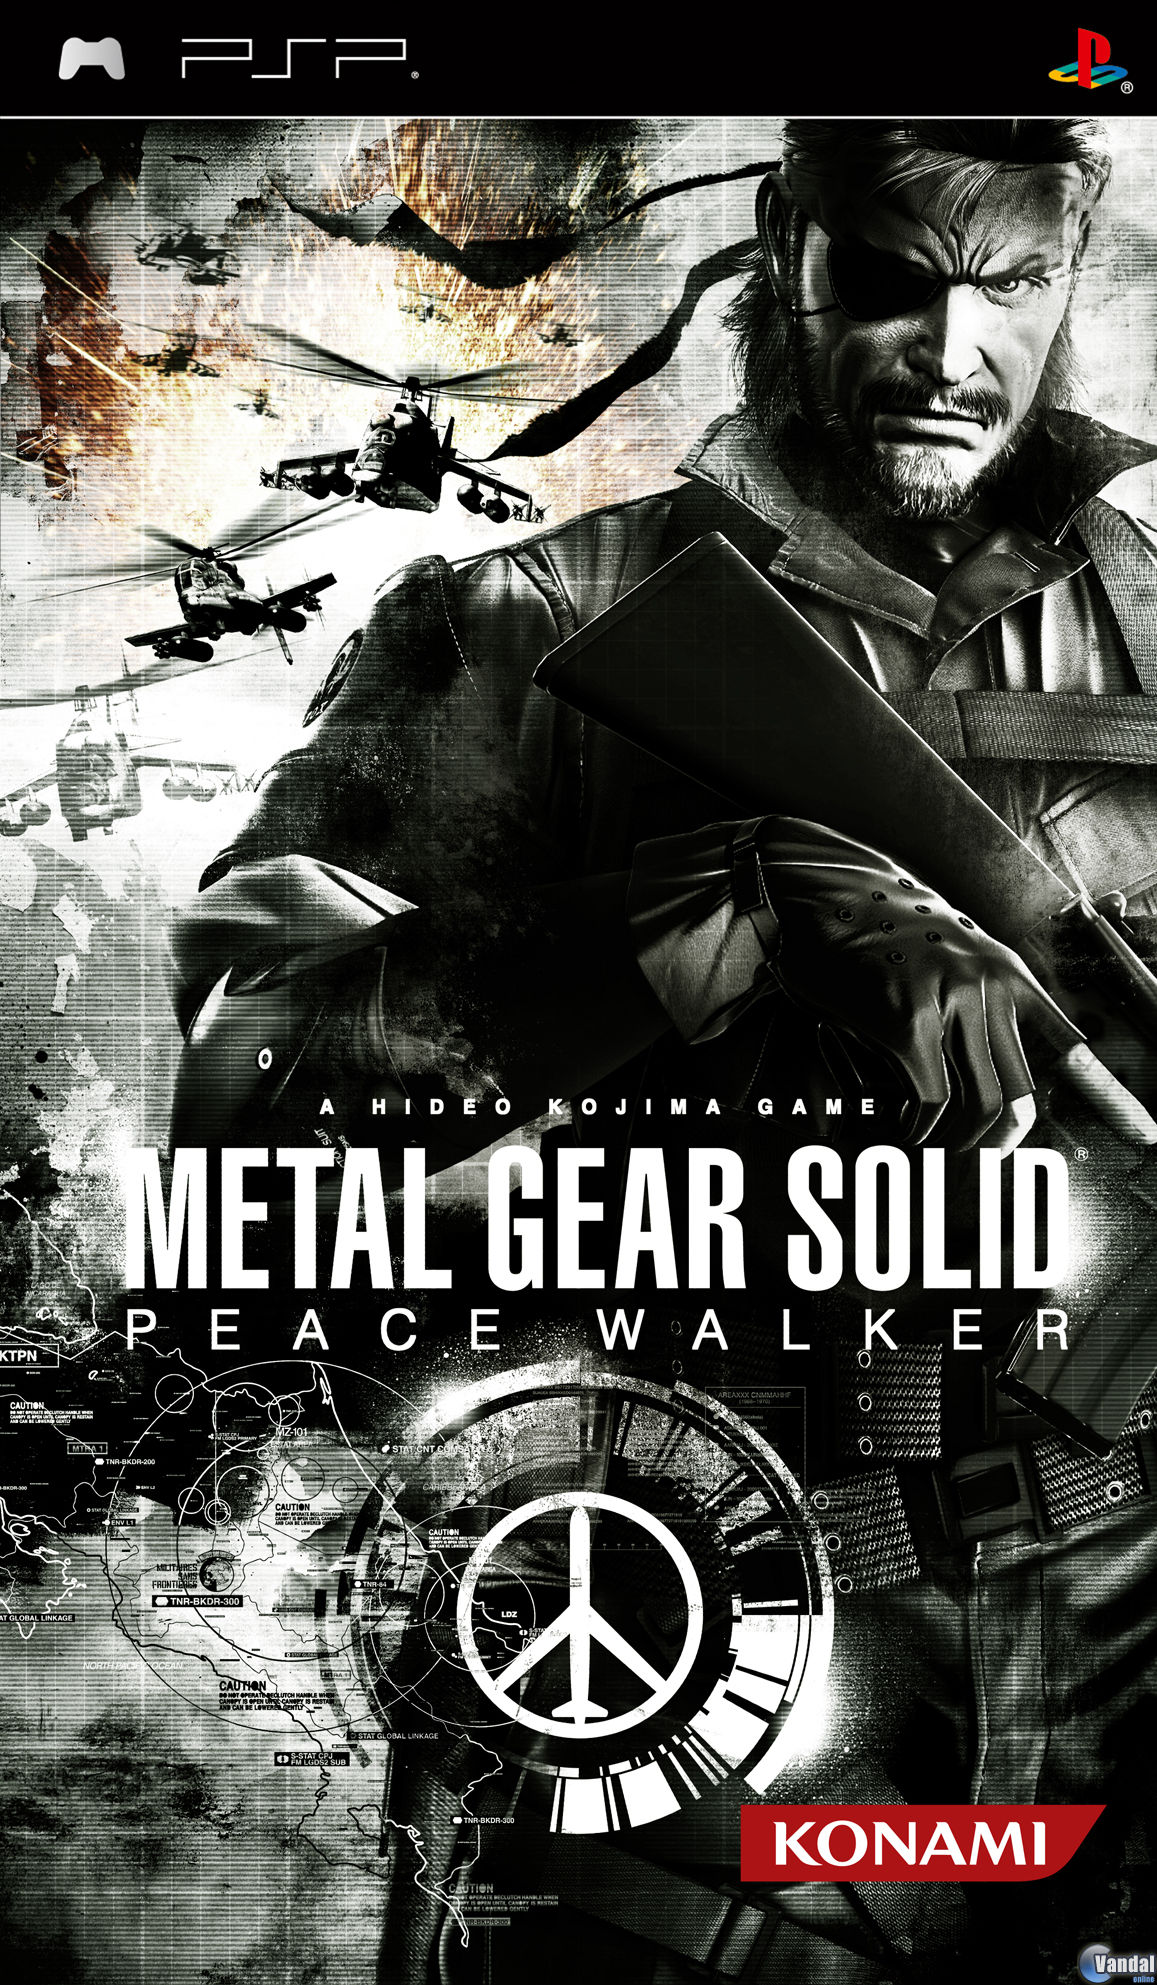 Metal Gear Solid Peace Walker (PSP) - Vandal